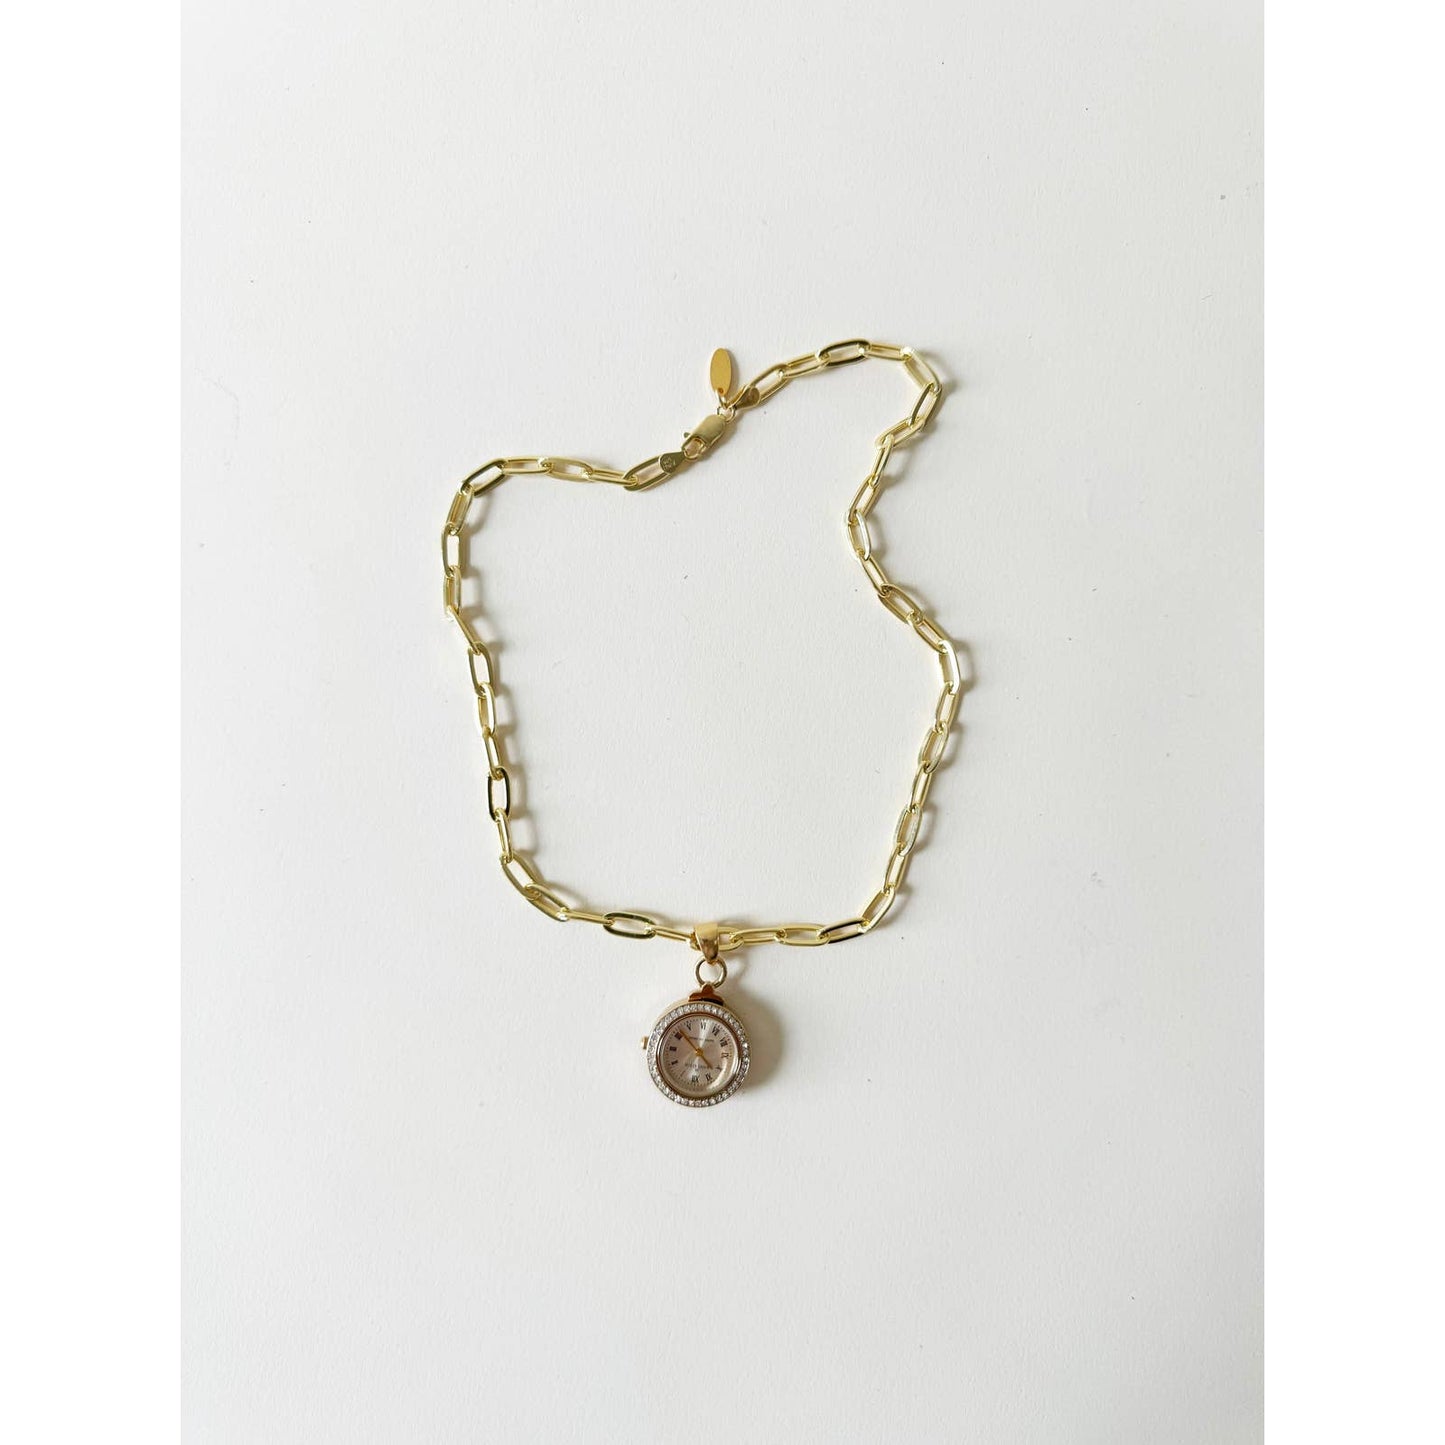 Watch Crystal Charm Necklace w/ Anne Klein | 925 Gold Vermeil Chain